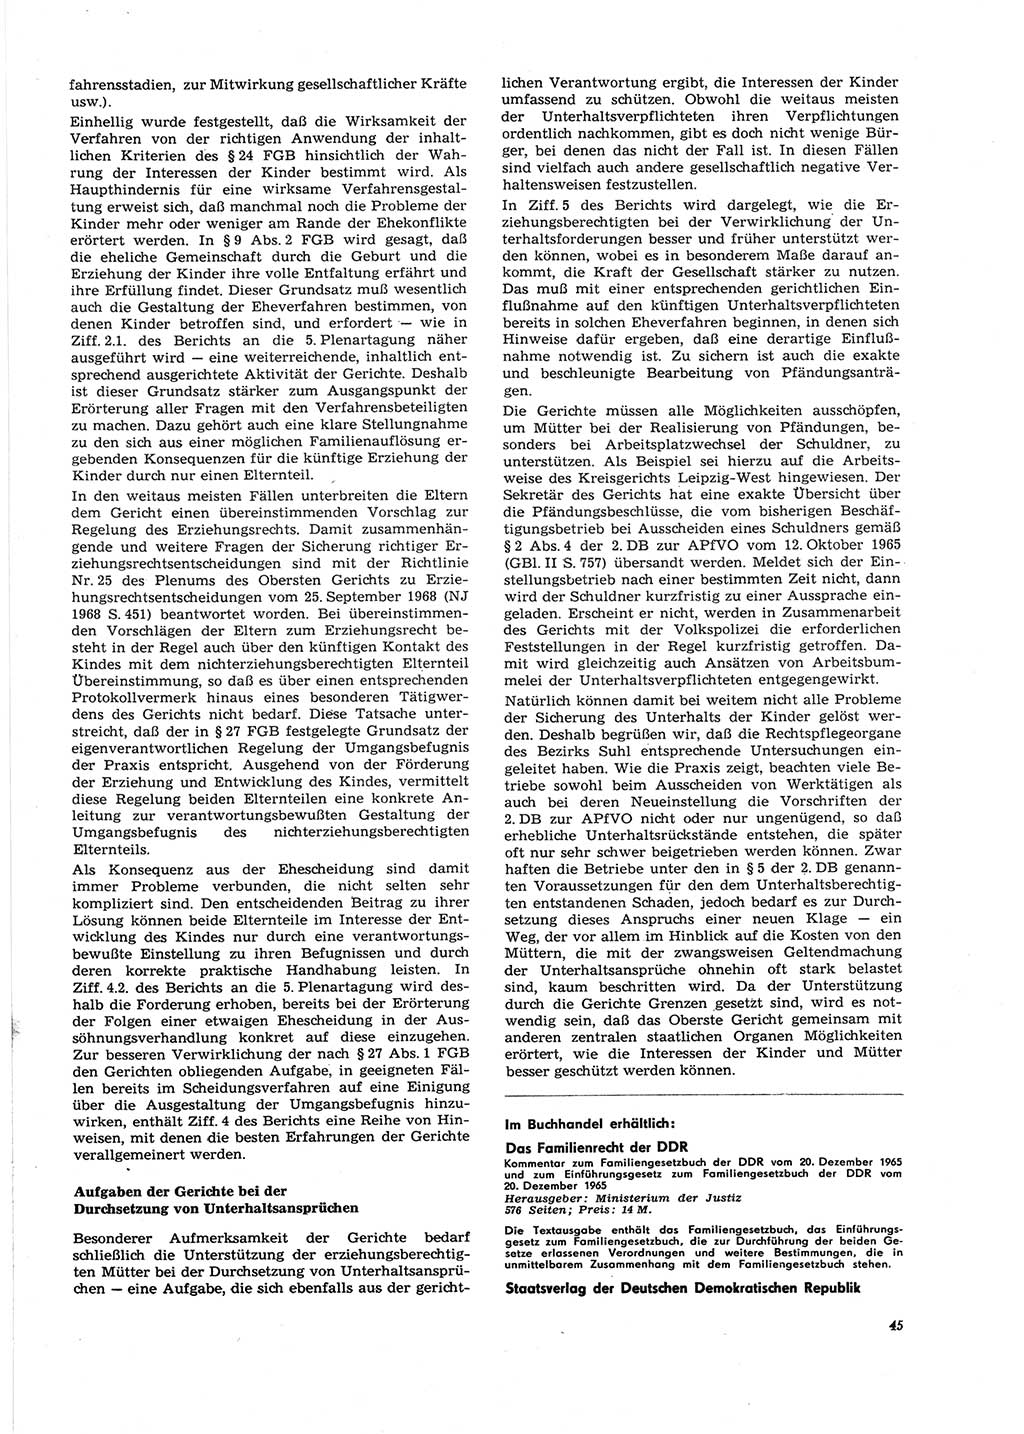 Neue Justiz (NJ), Zeitschrift für Recht und Rechtswissenschaft [Deutsche Demokratische Republik (DDR)], 27. Jahrgang 1973, Seite 45 (NJ DDR 1973, S. 45)